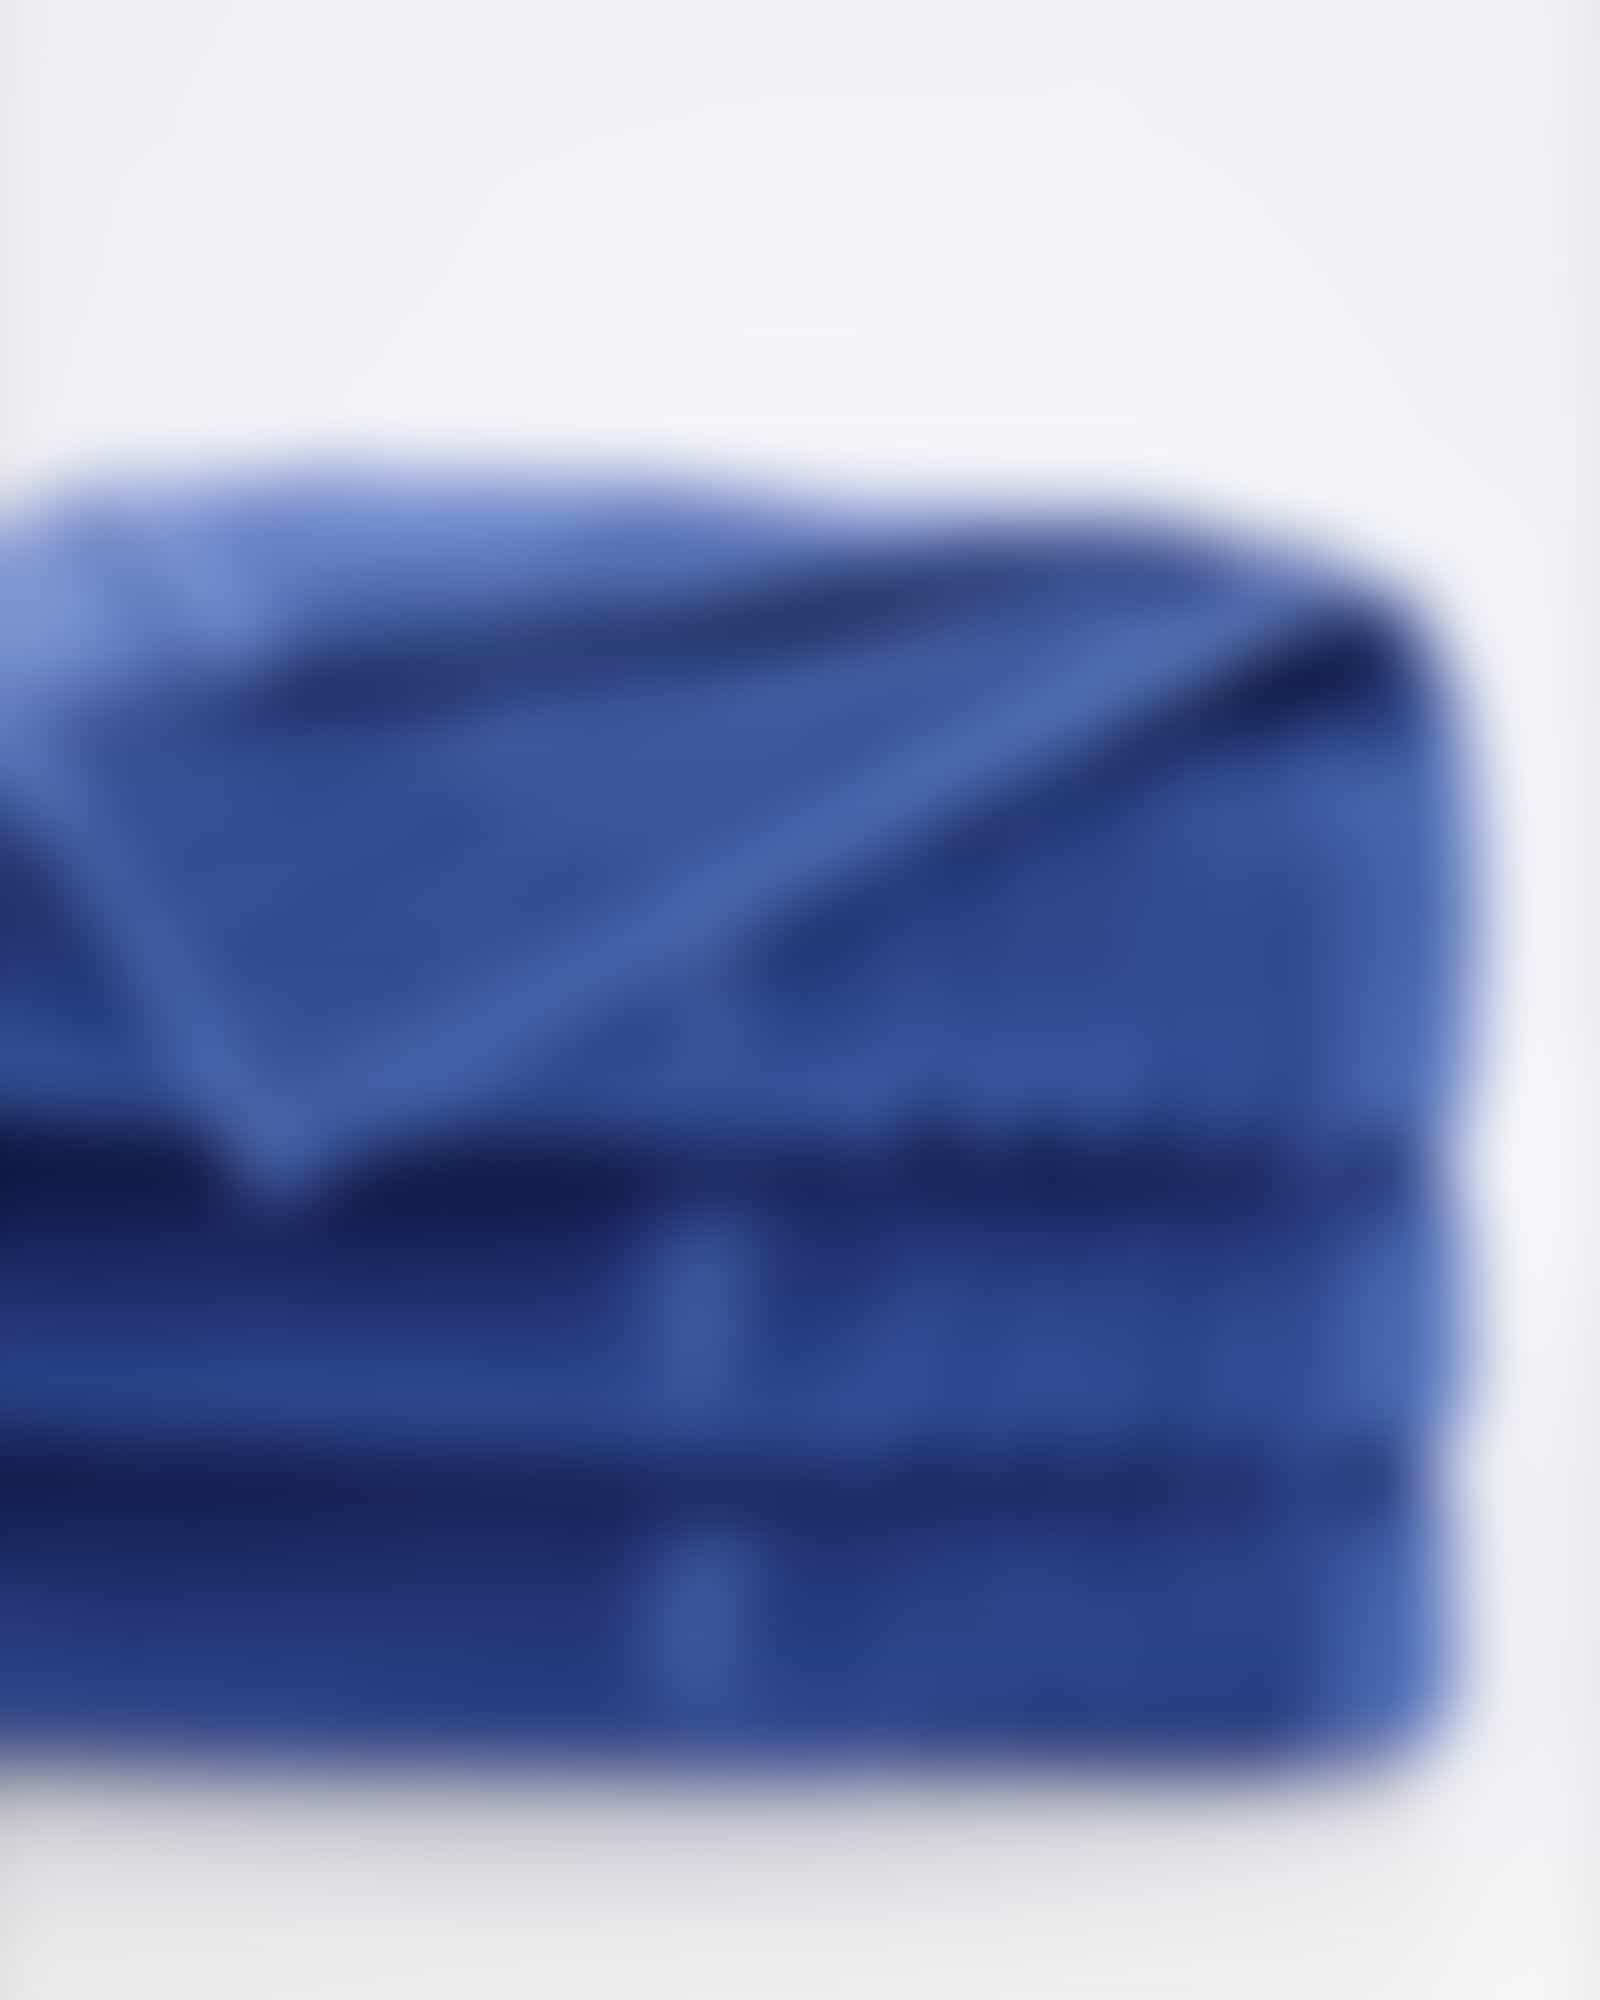 Vossen Vienna Style Supersoft - Farbe: deep blue - 469 - Waschhandschuh 16x22 cm